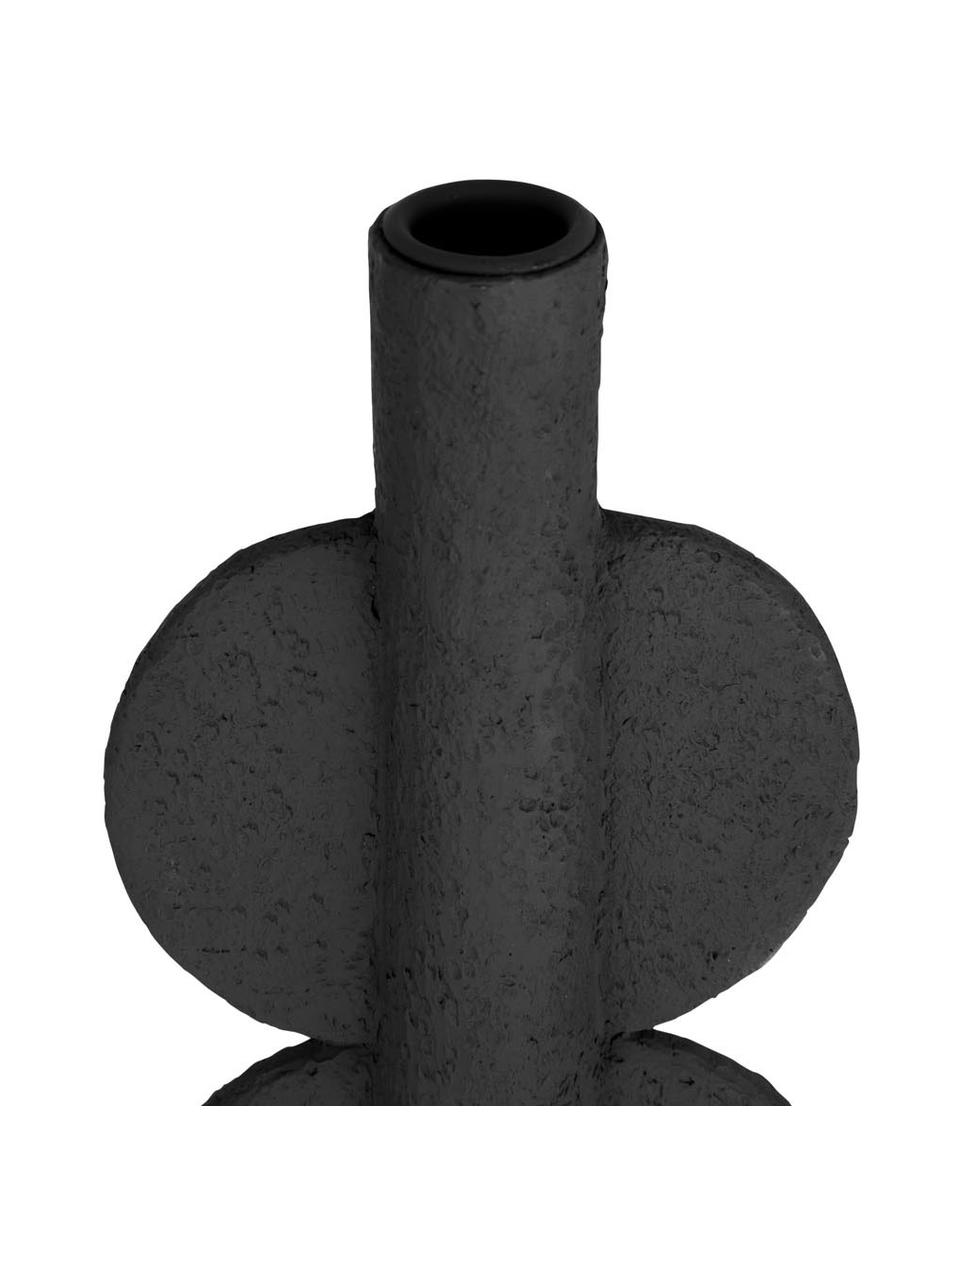 Kandelaar Double Bubble in zwart, Polyresin, Zwart, 11 x 22 cm